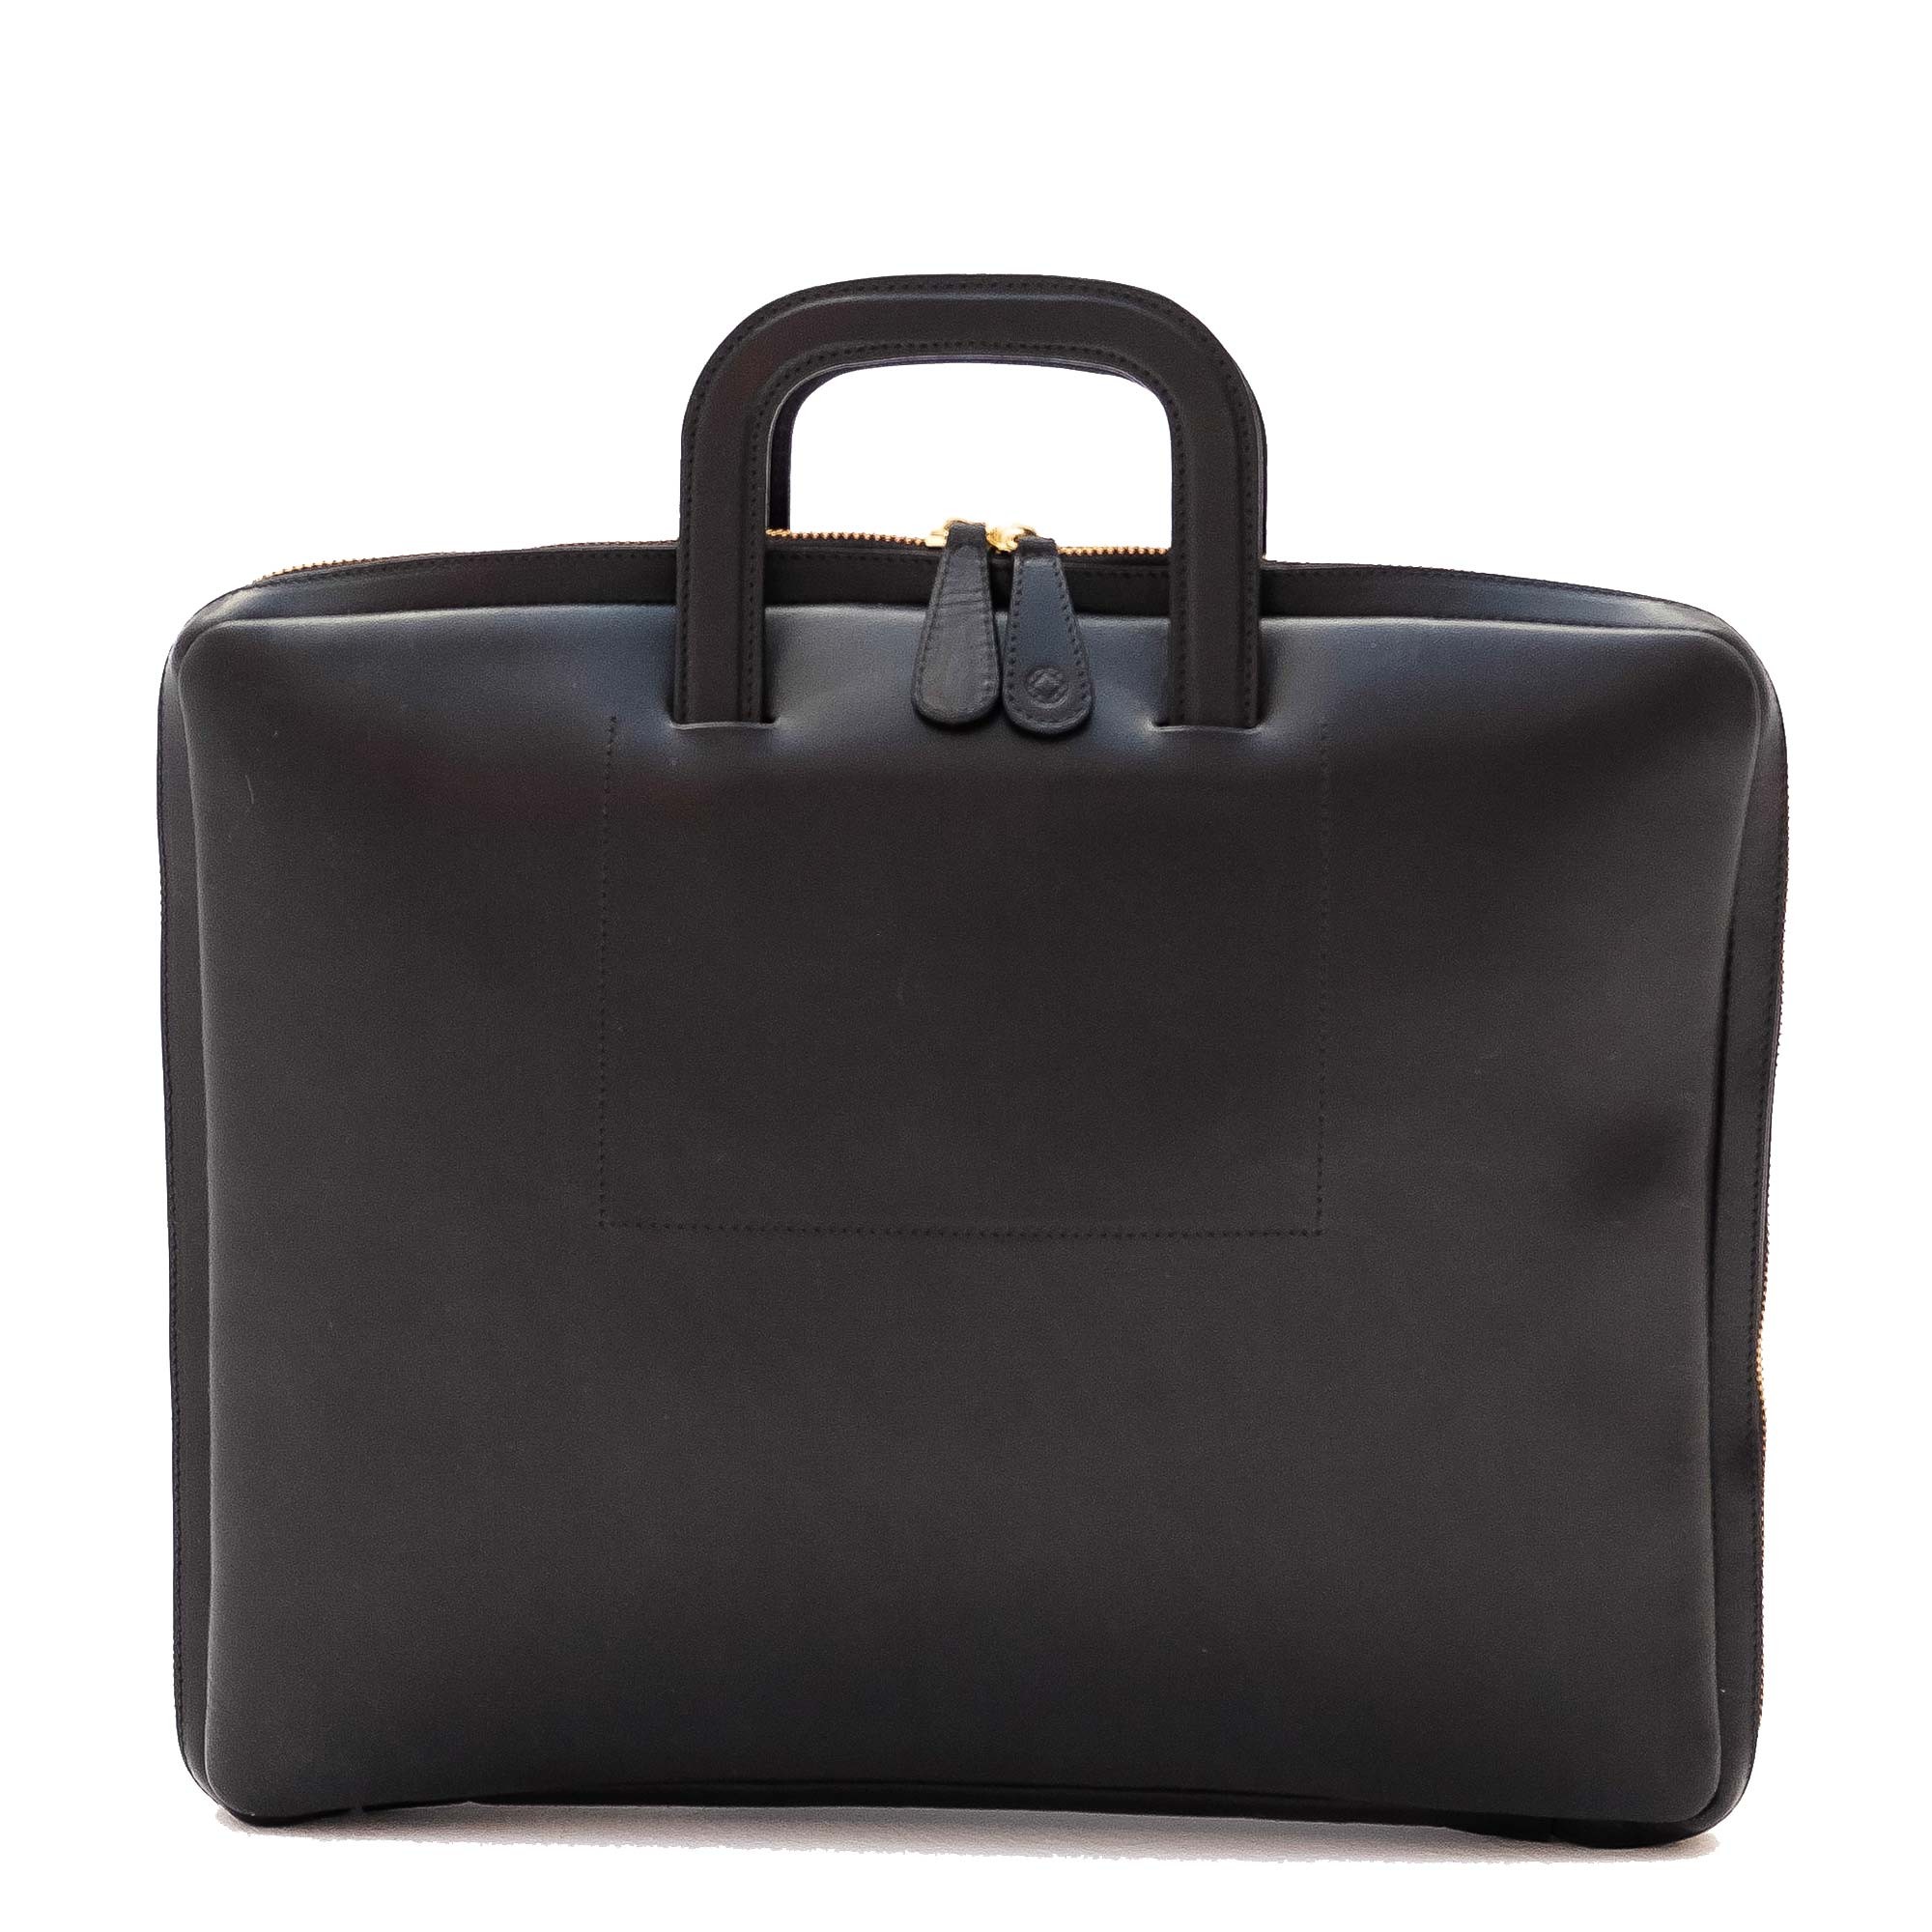 15" Black Belgrano Office Bag Laptop Bag